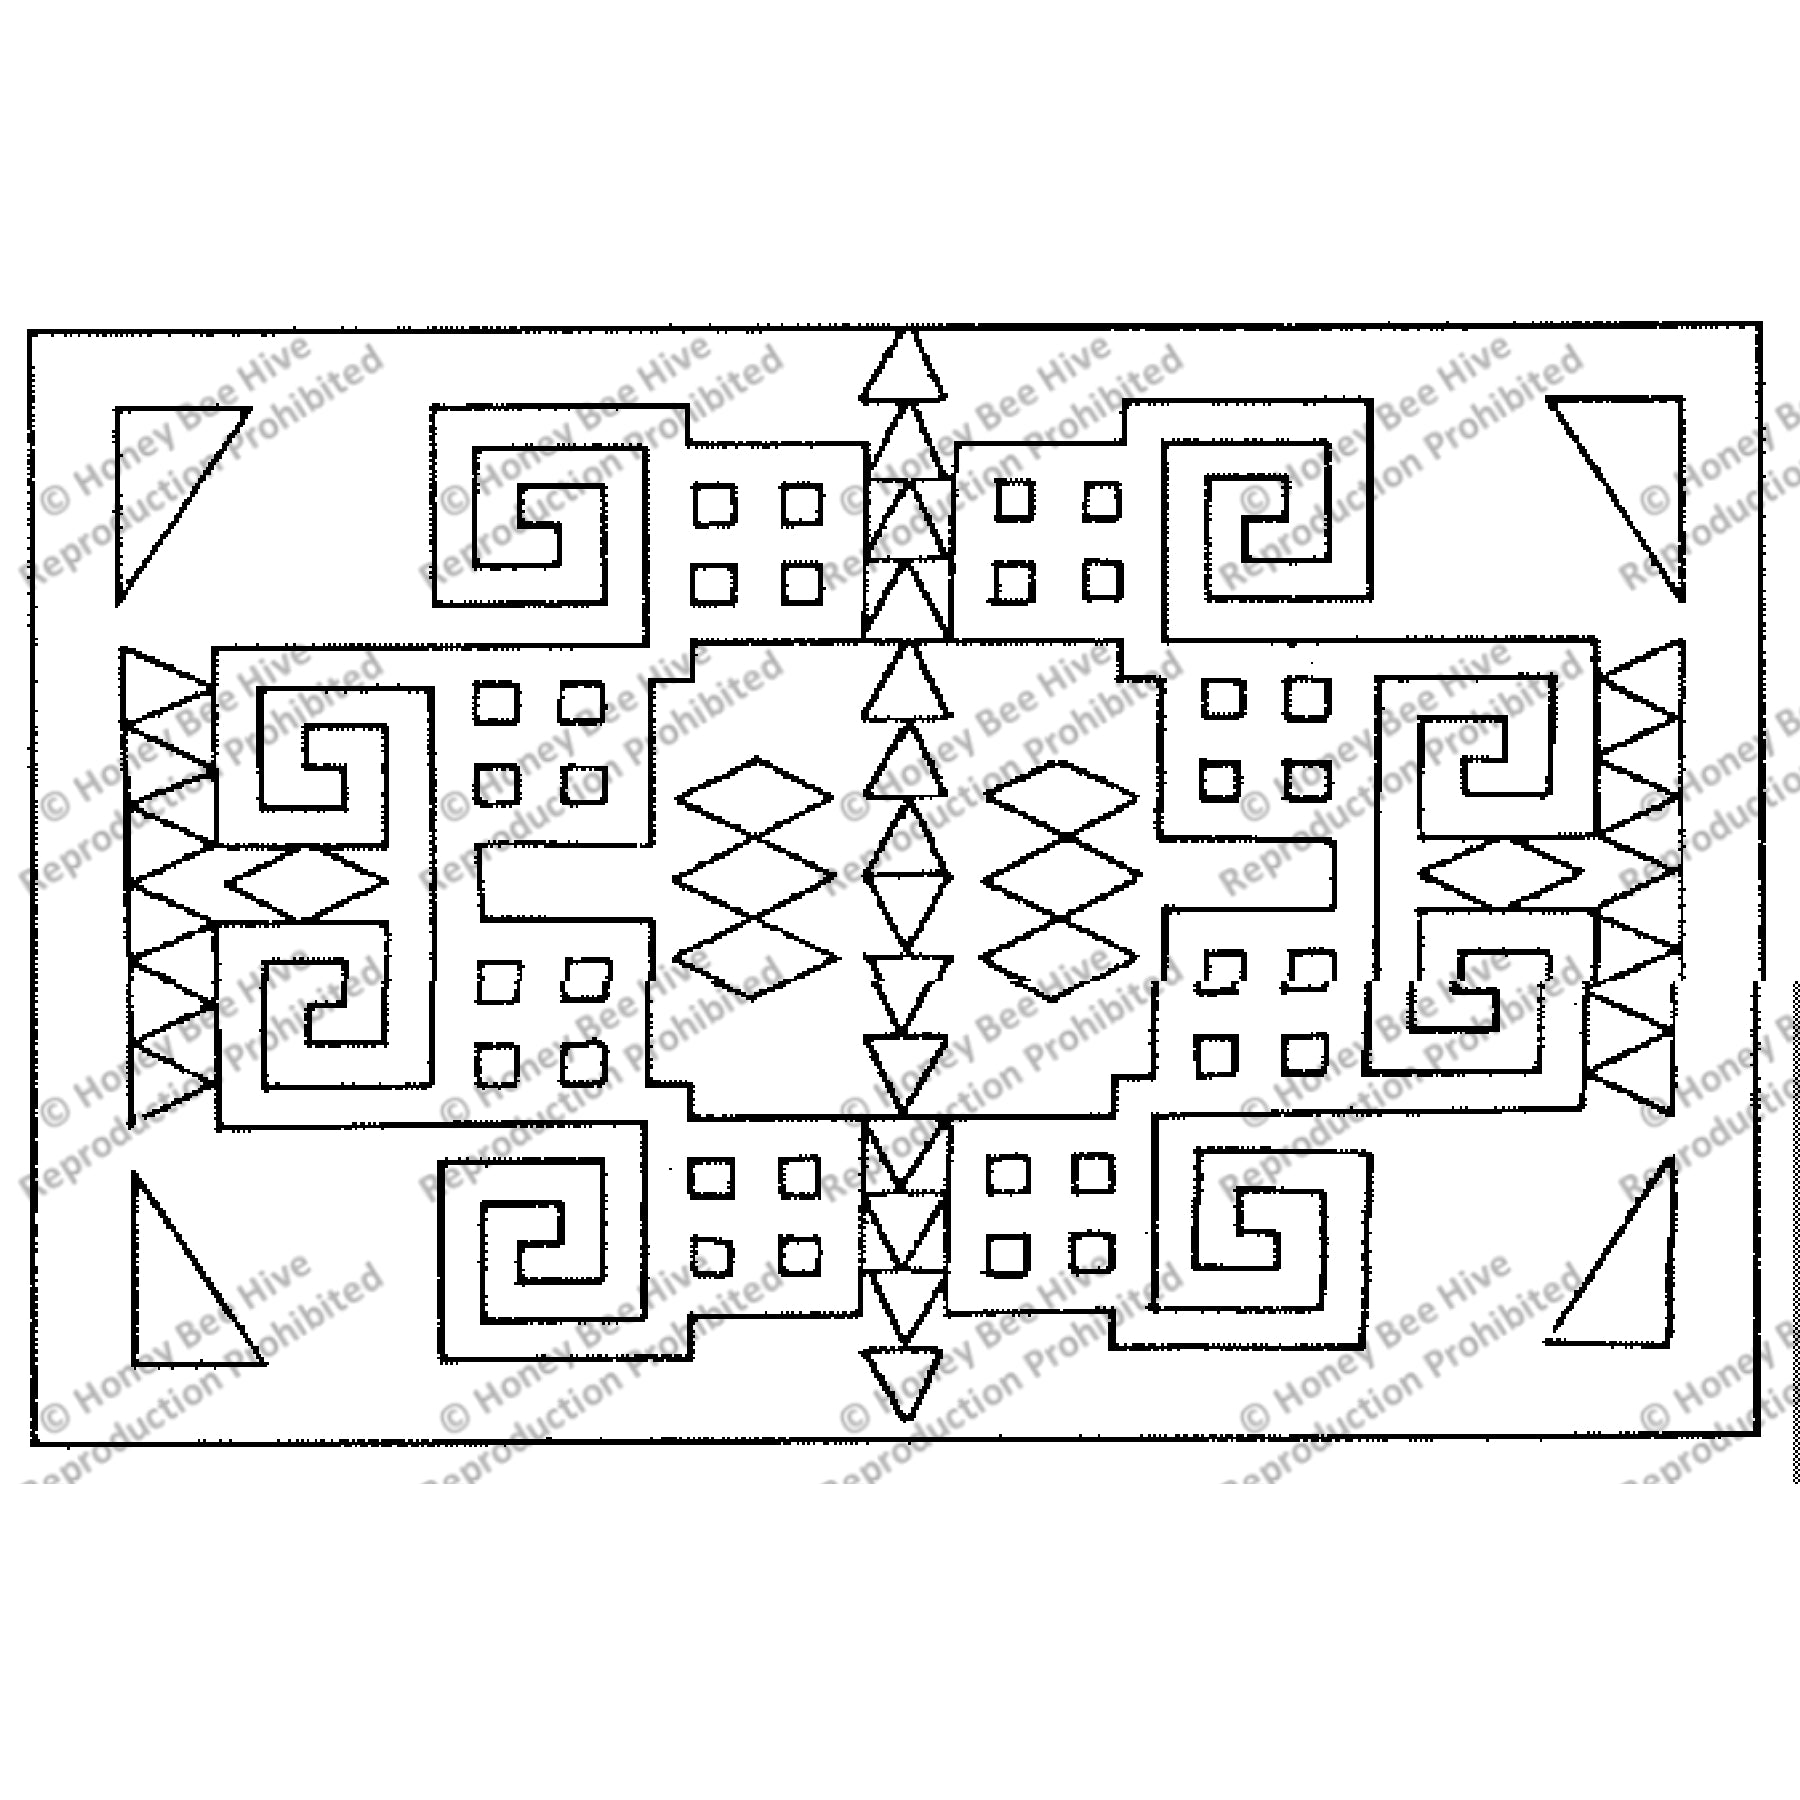 Umatilla, rug hooking pattern